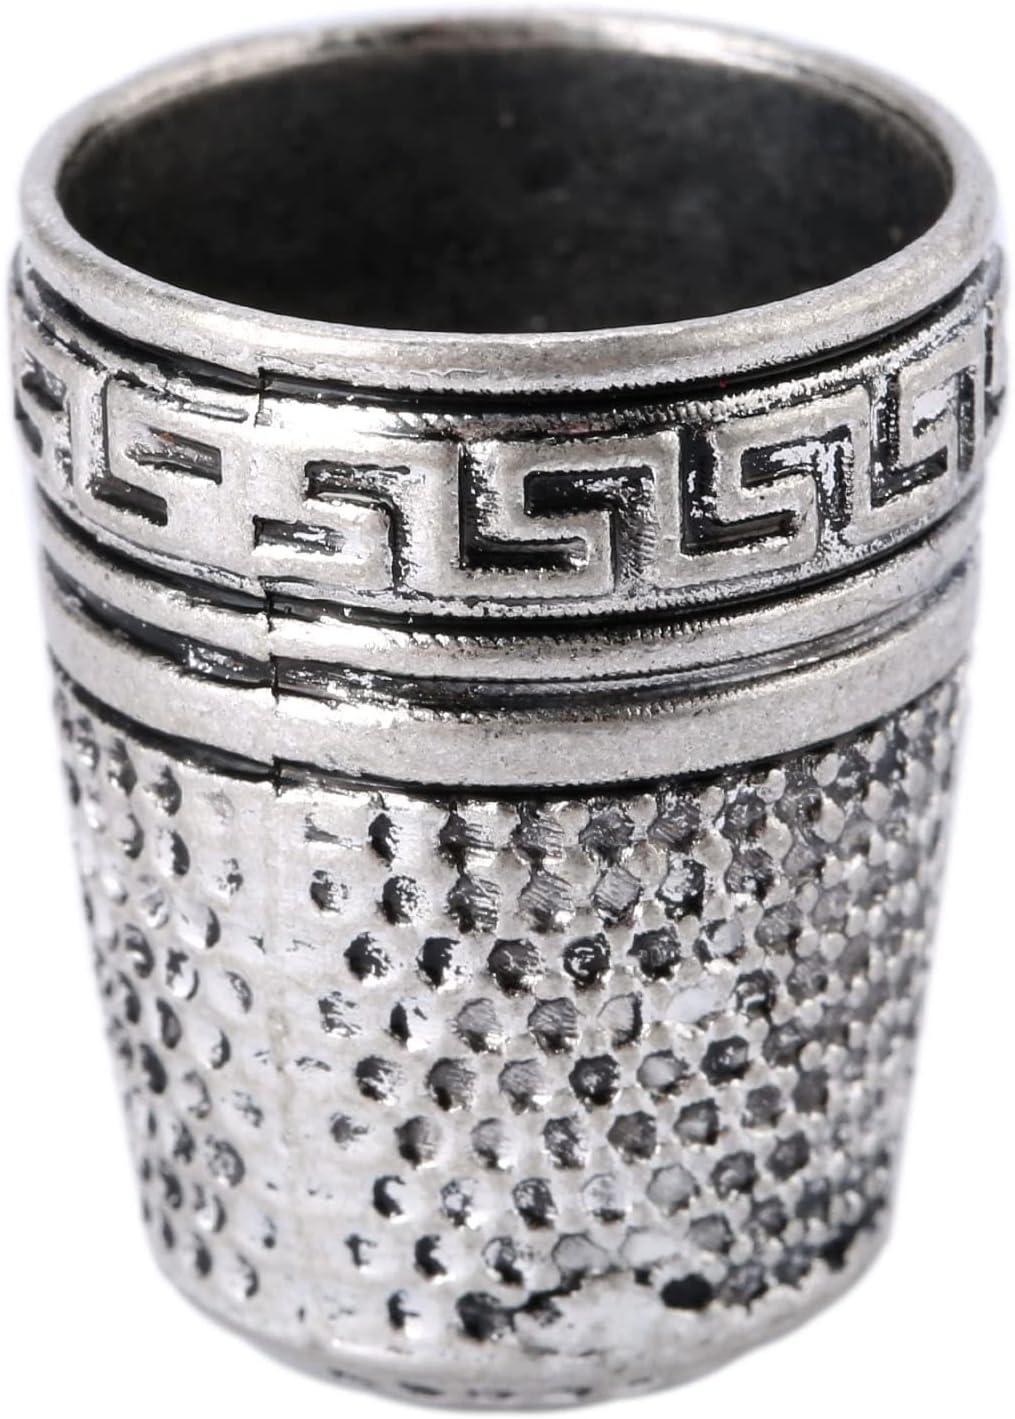 SILVER METAL THIMBLE Metal Thimbles for Hand Sewing 6Pcs Thimble Ring Cap  $5.12 - PicClick AU